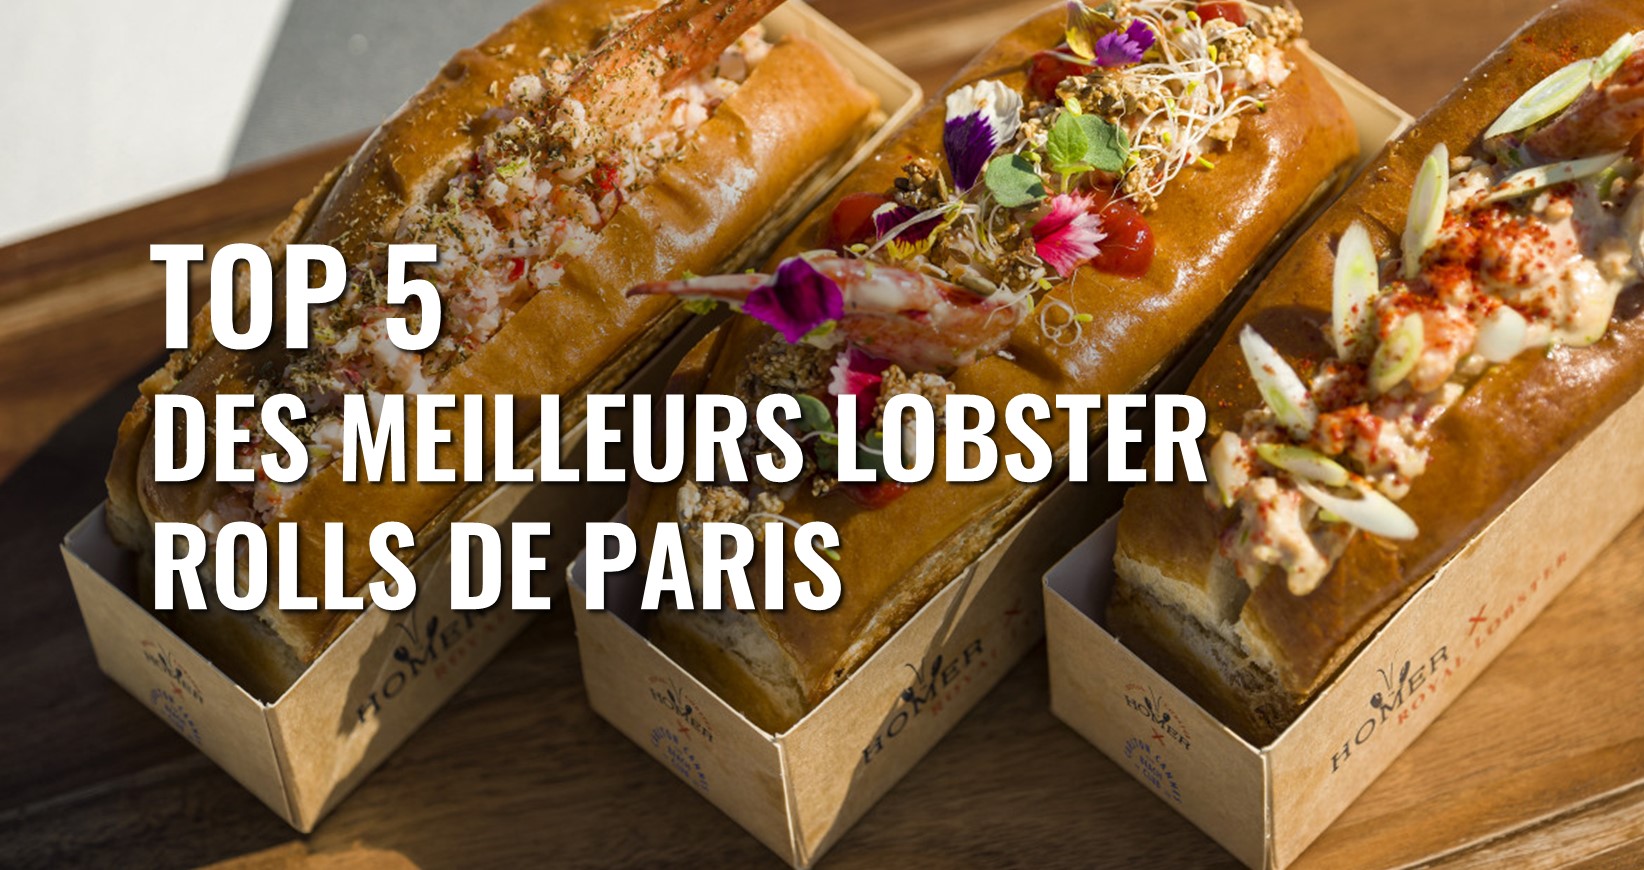 Où trouver les meilleurs lobster rolls à Paris